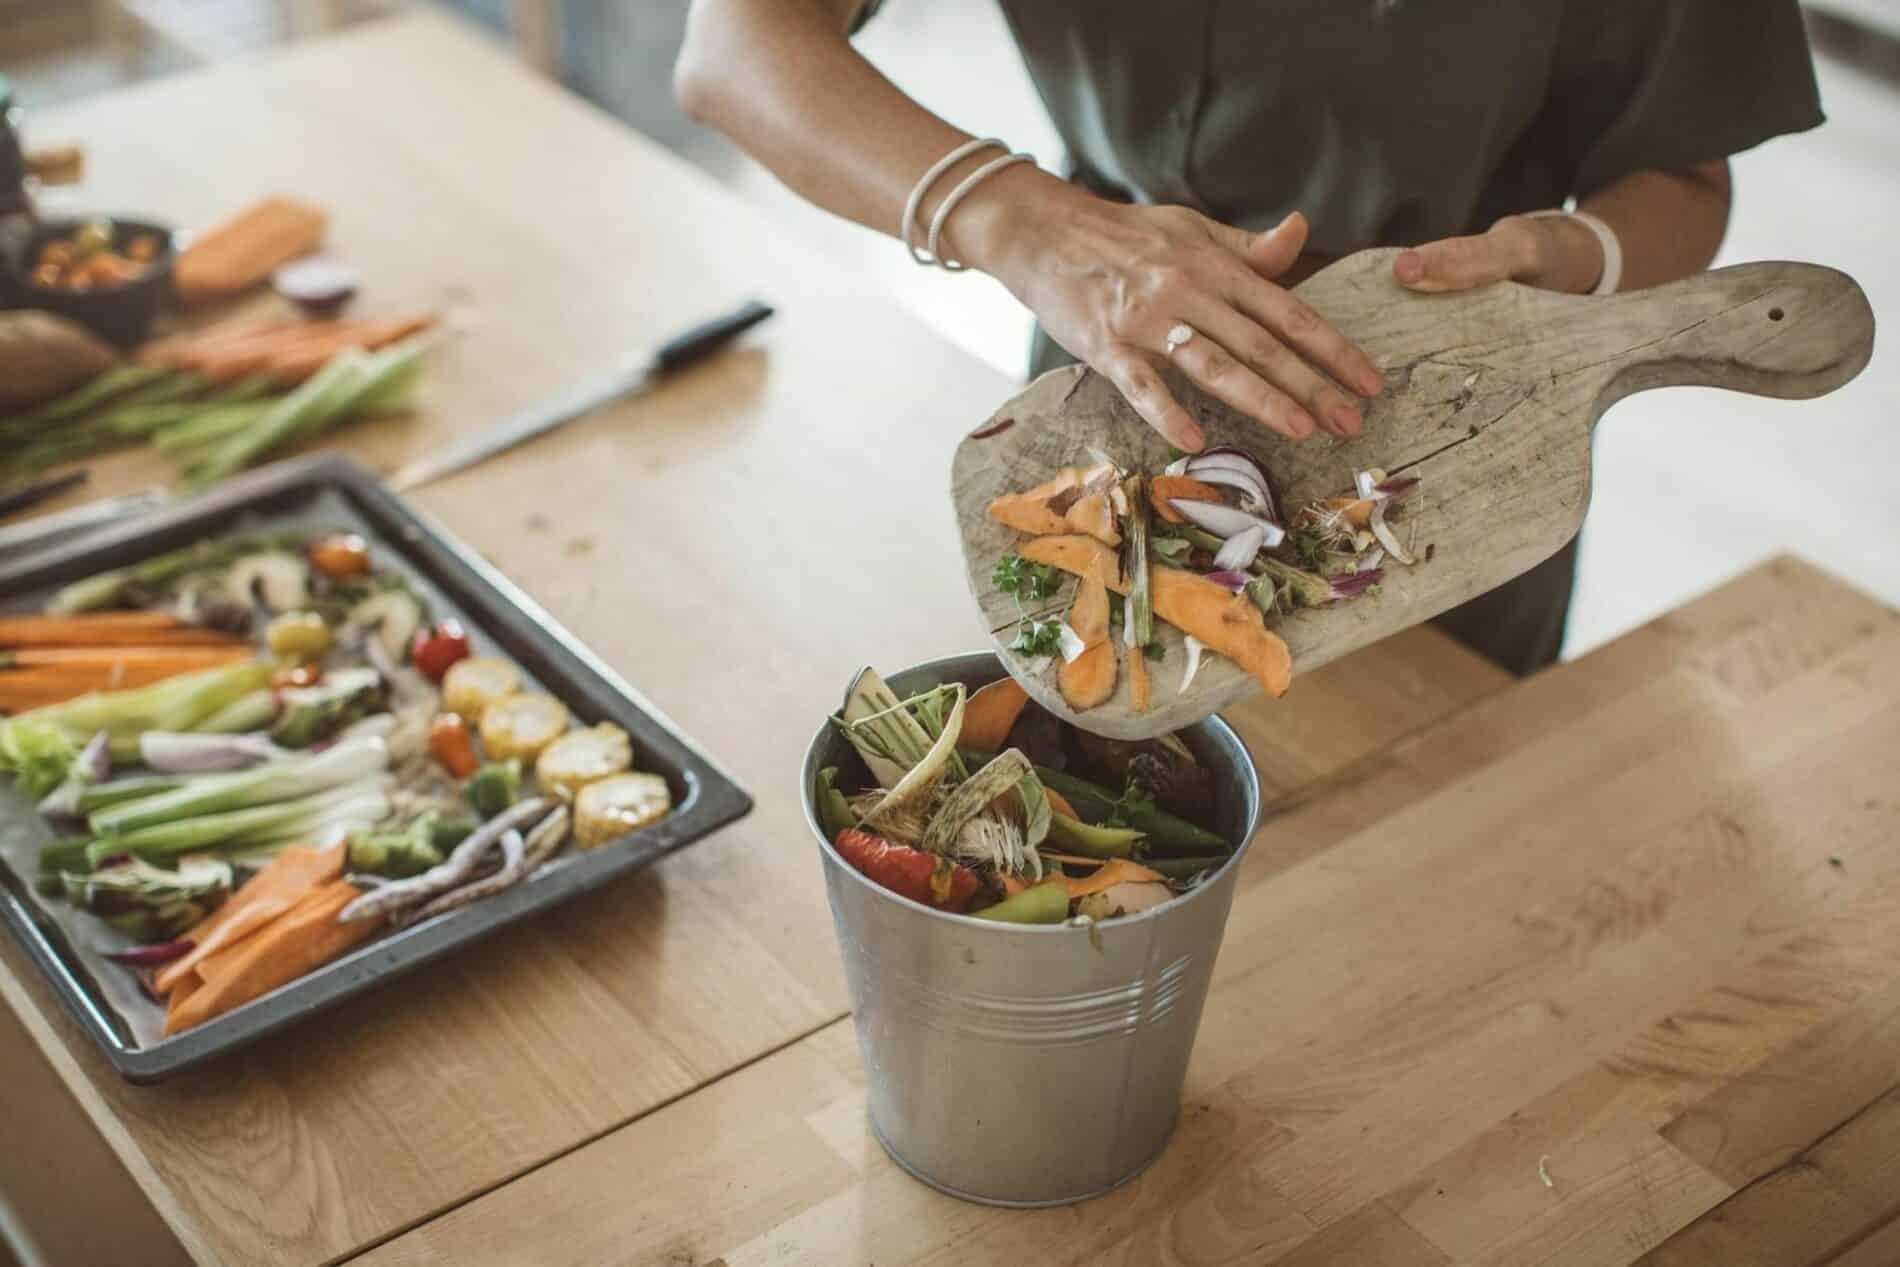 Aprenda 6 maneiras de reduzir o desperdício de alimentos